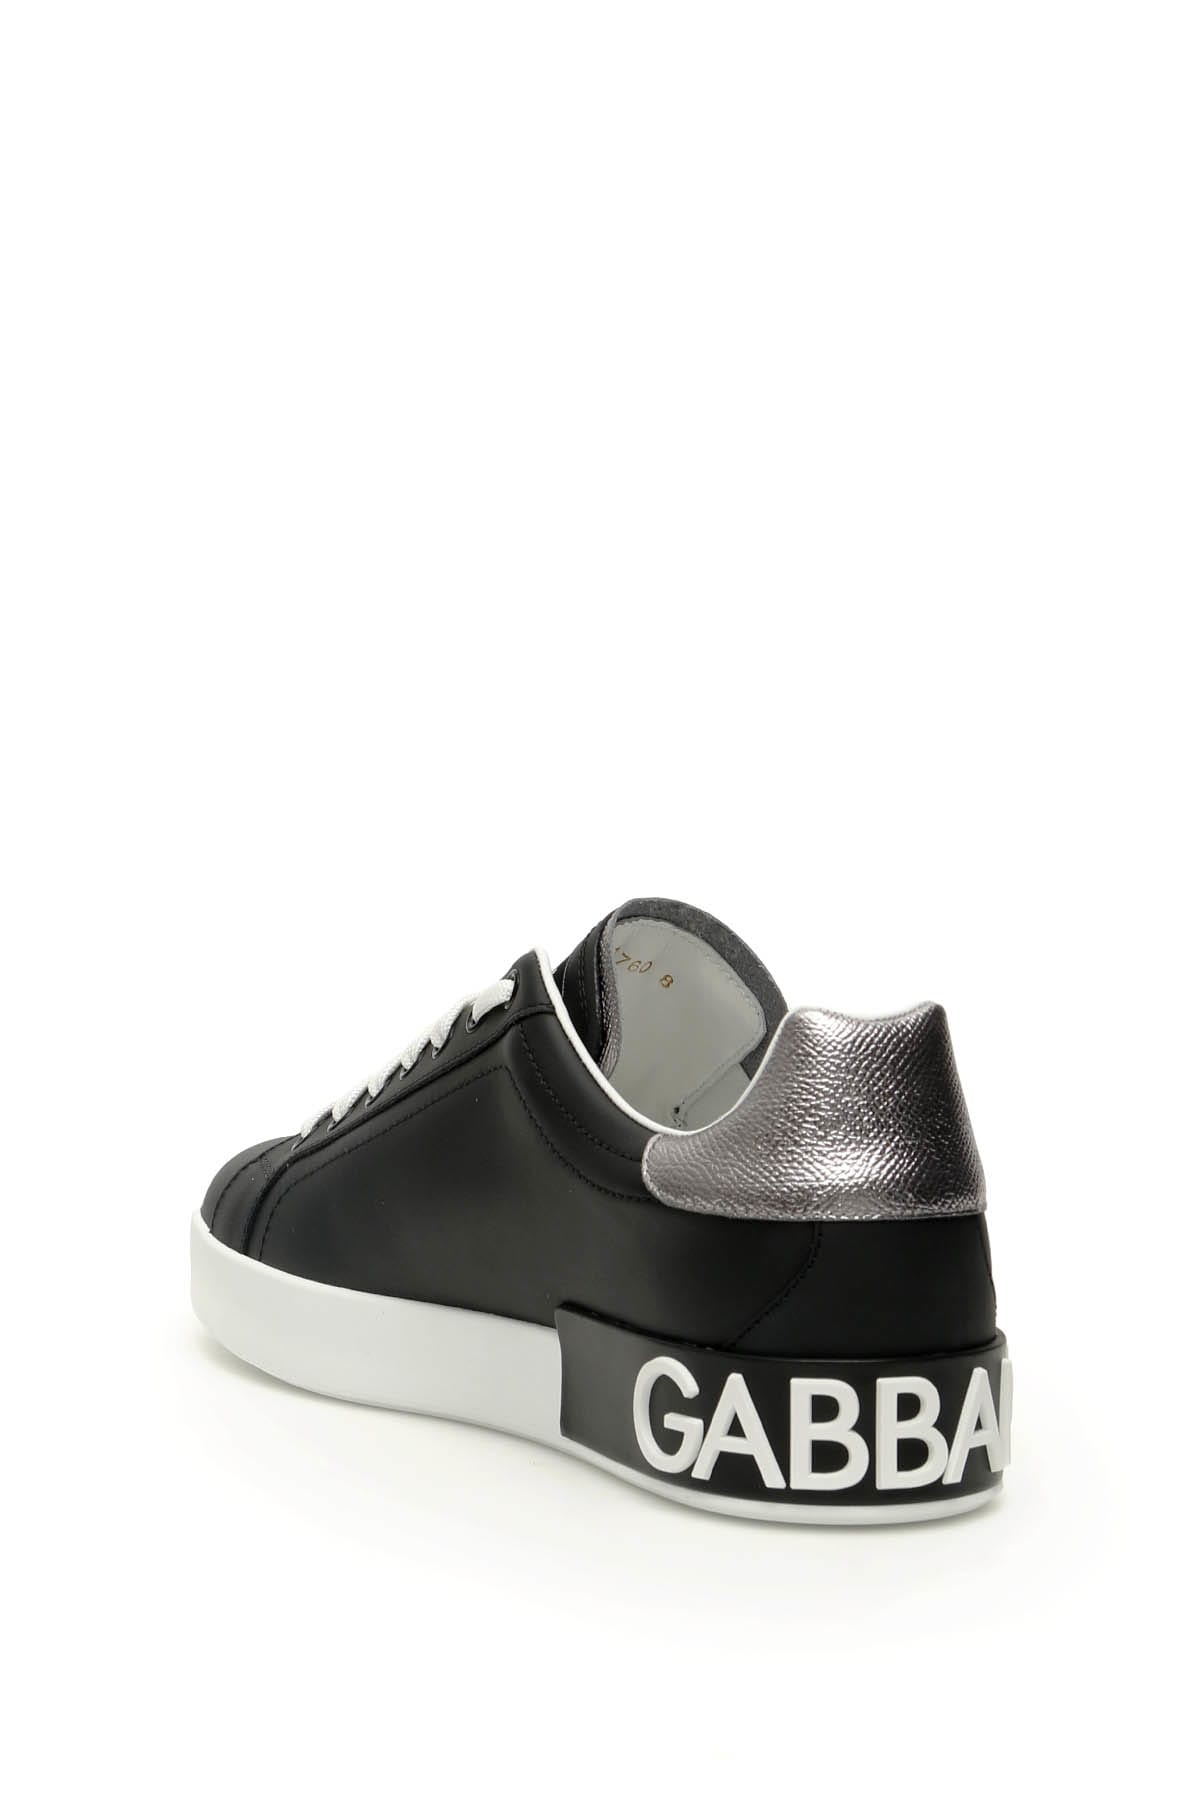 Shop Dolce & Gabbana Portofino Leather Sneakers In Nero Argento (silver)